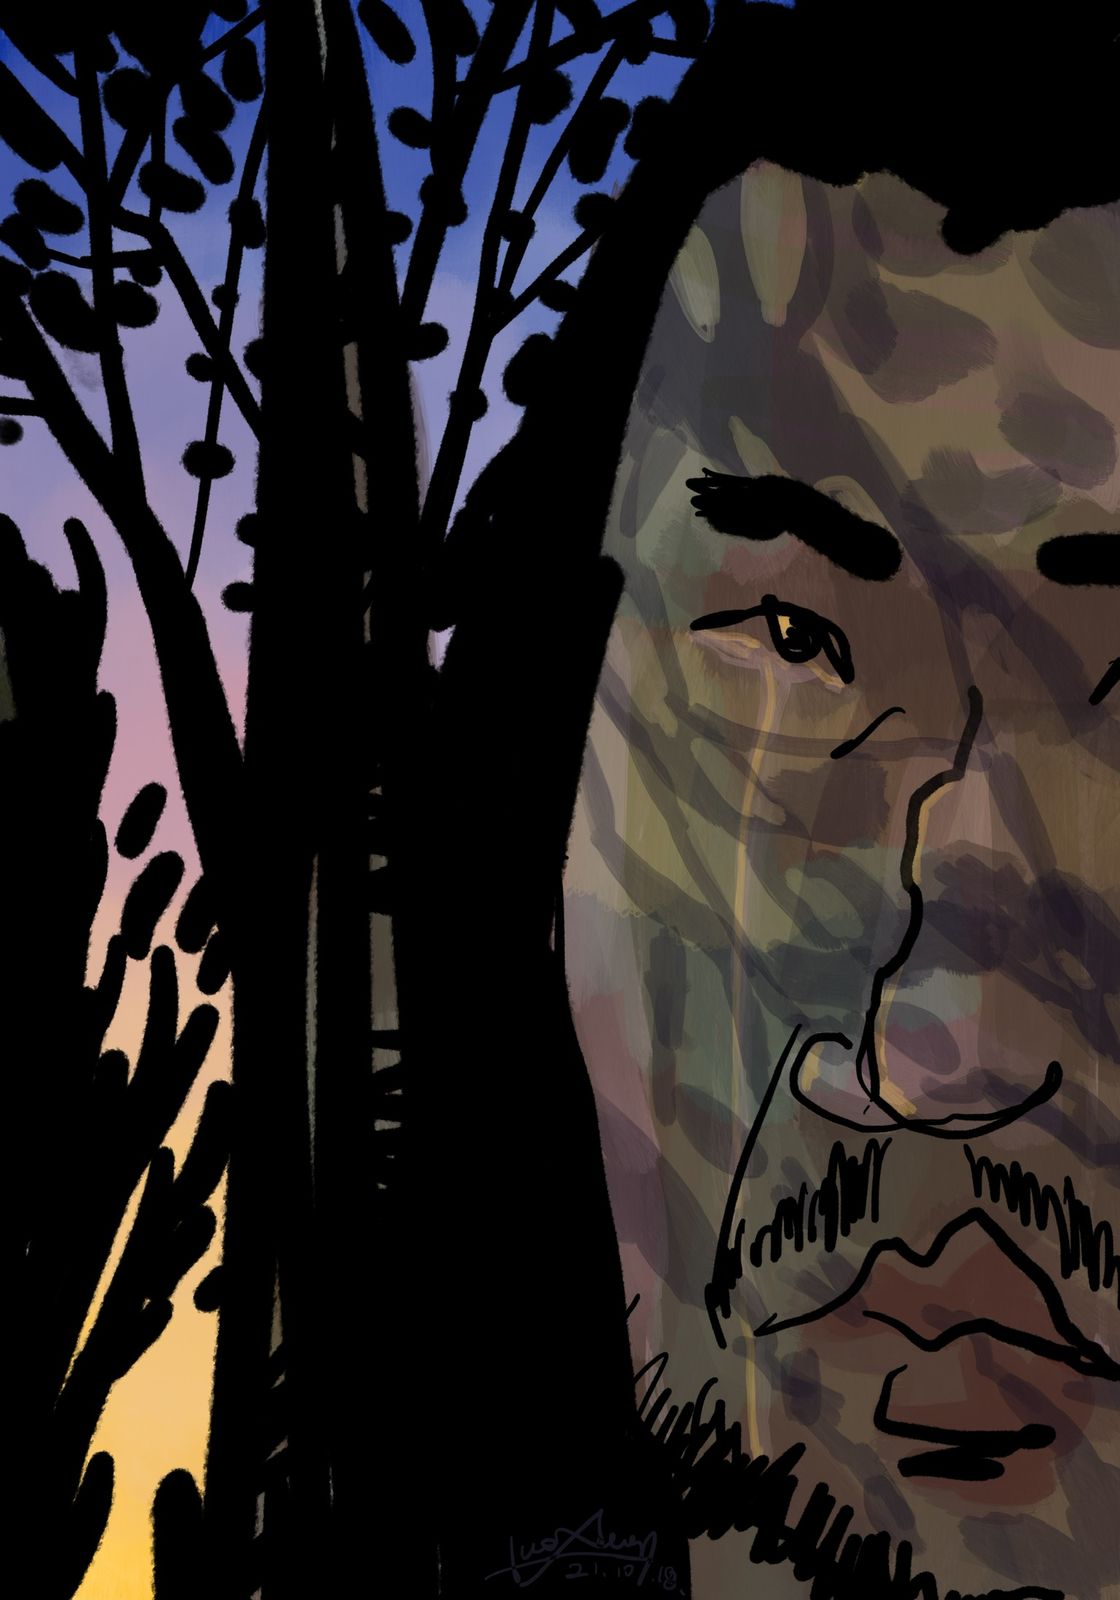 绘本《胡子大叔的旅行》一 一树影中